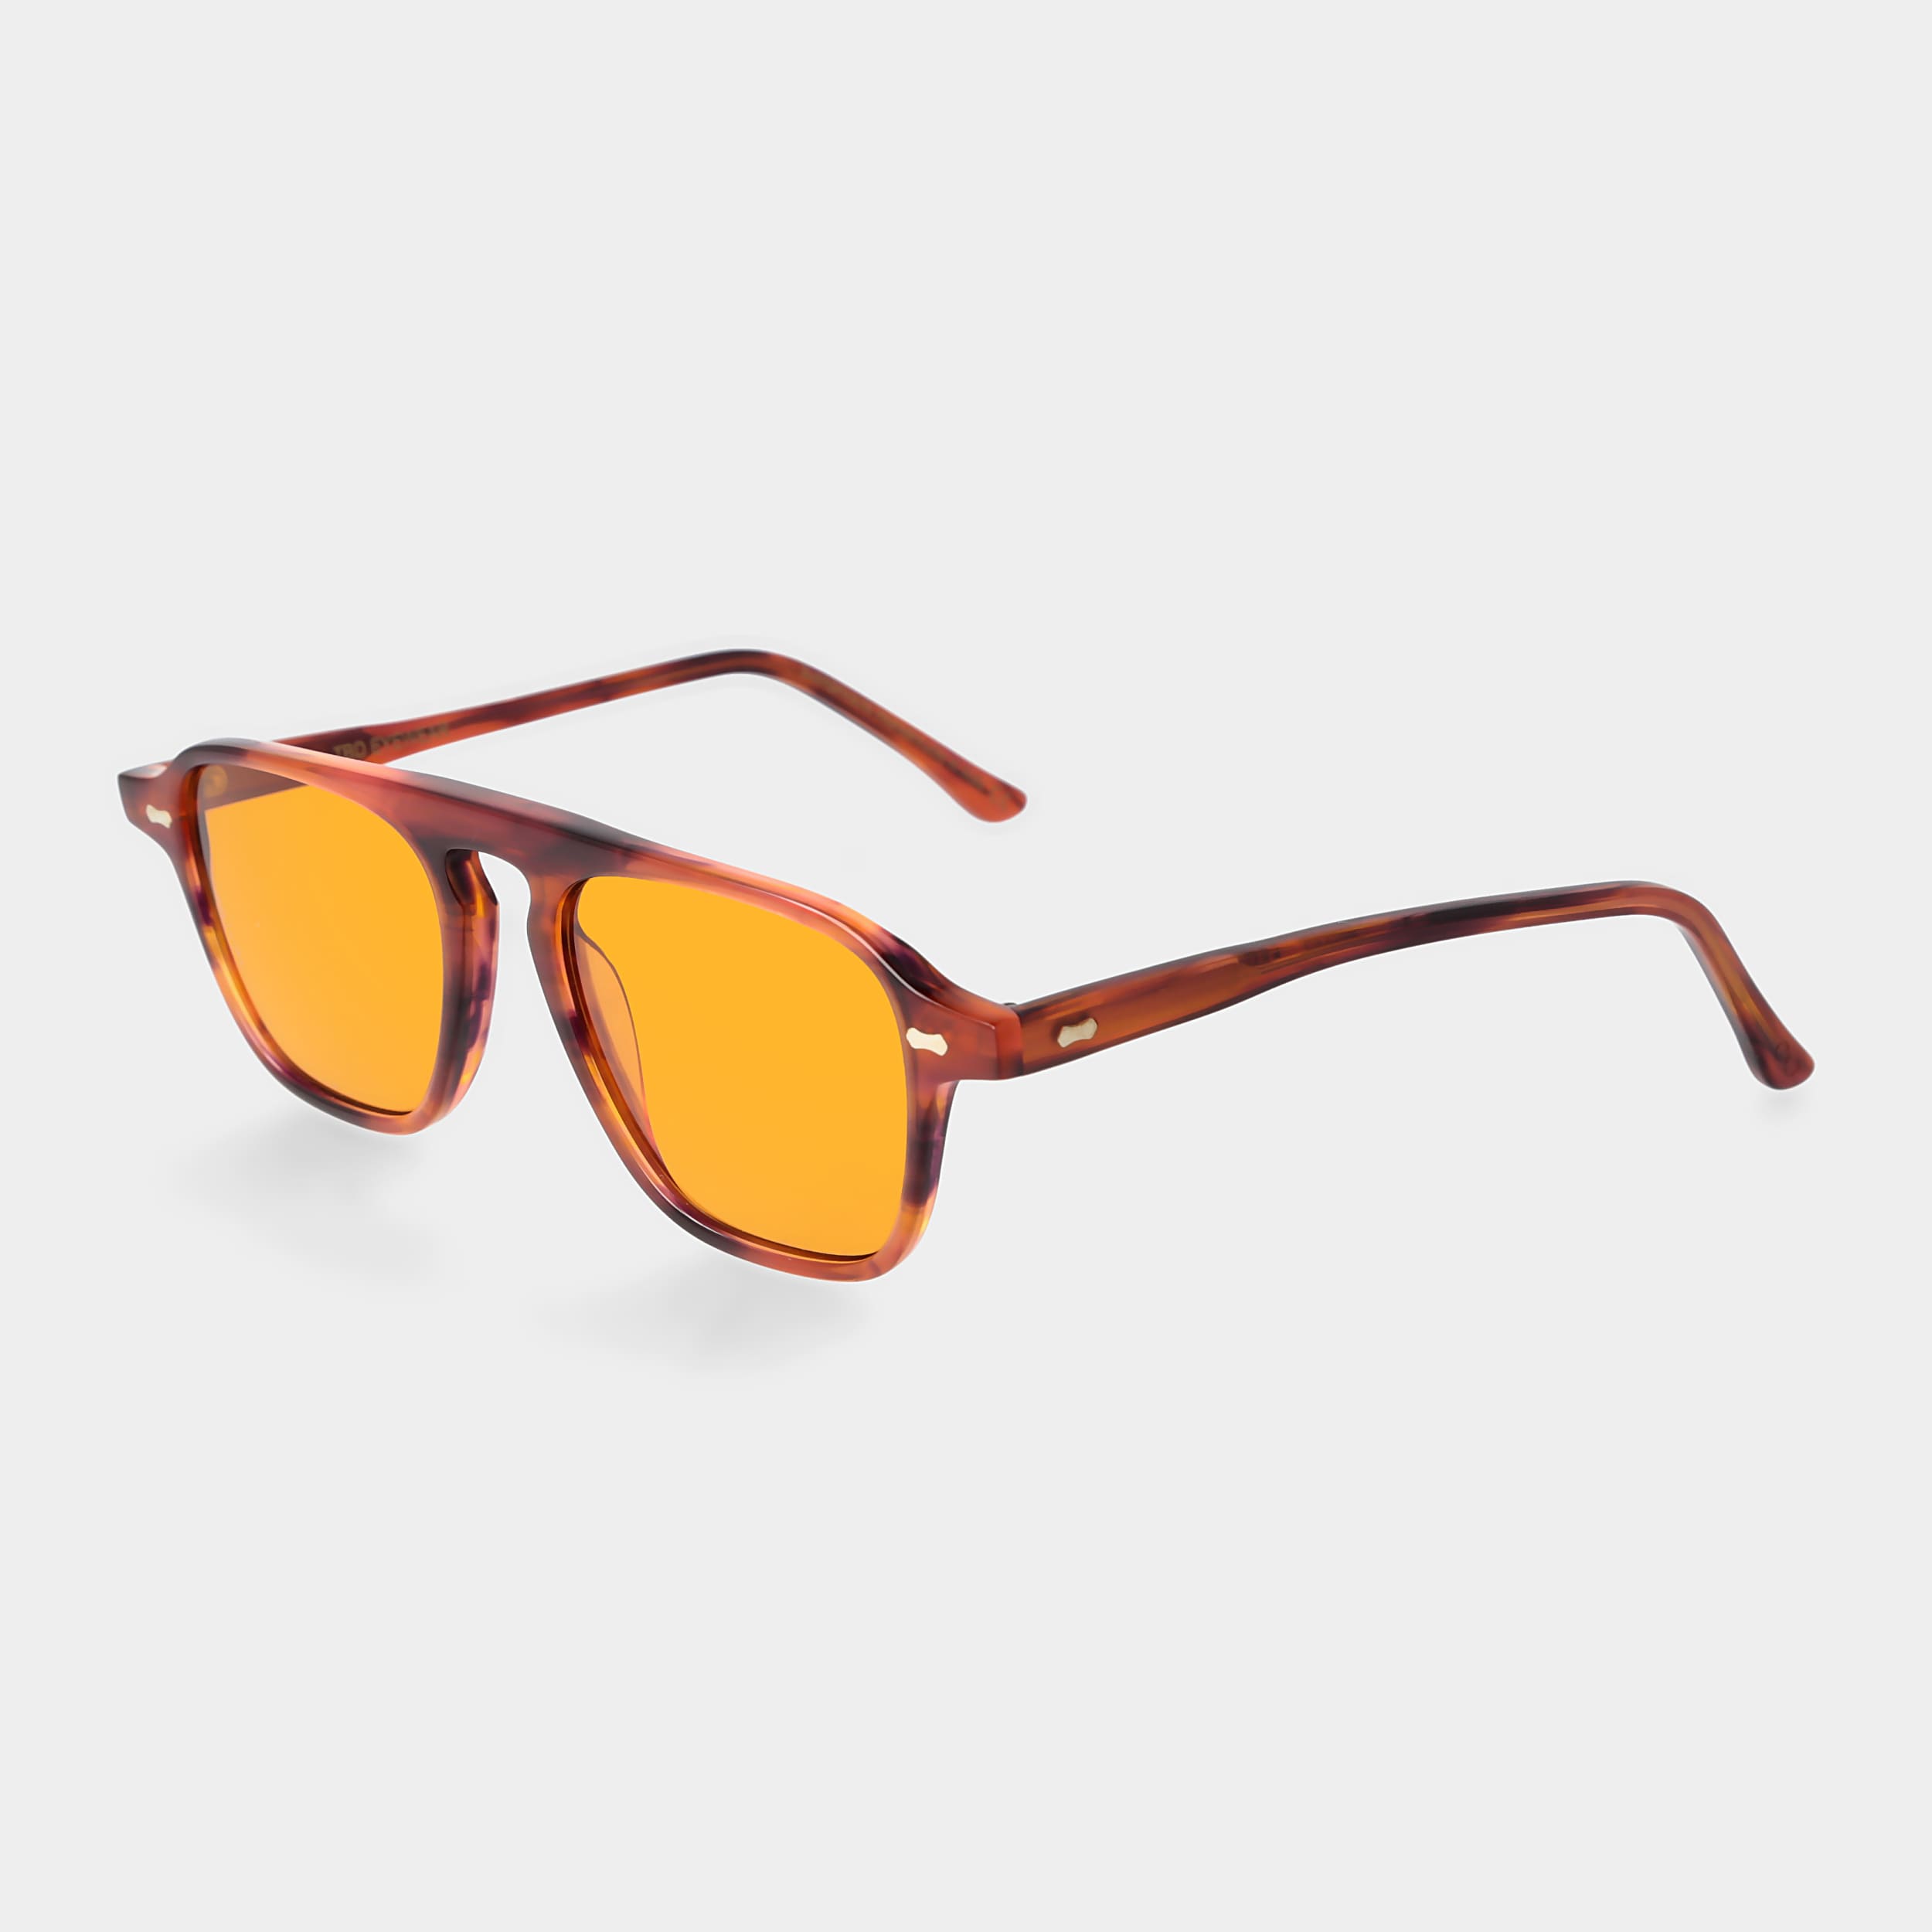 sunglasses-panama-eco-havana-orange-sustainable-tbd-eyewear-total